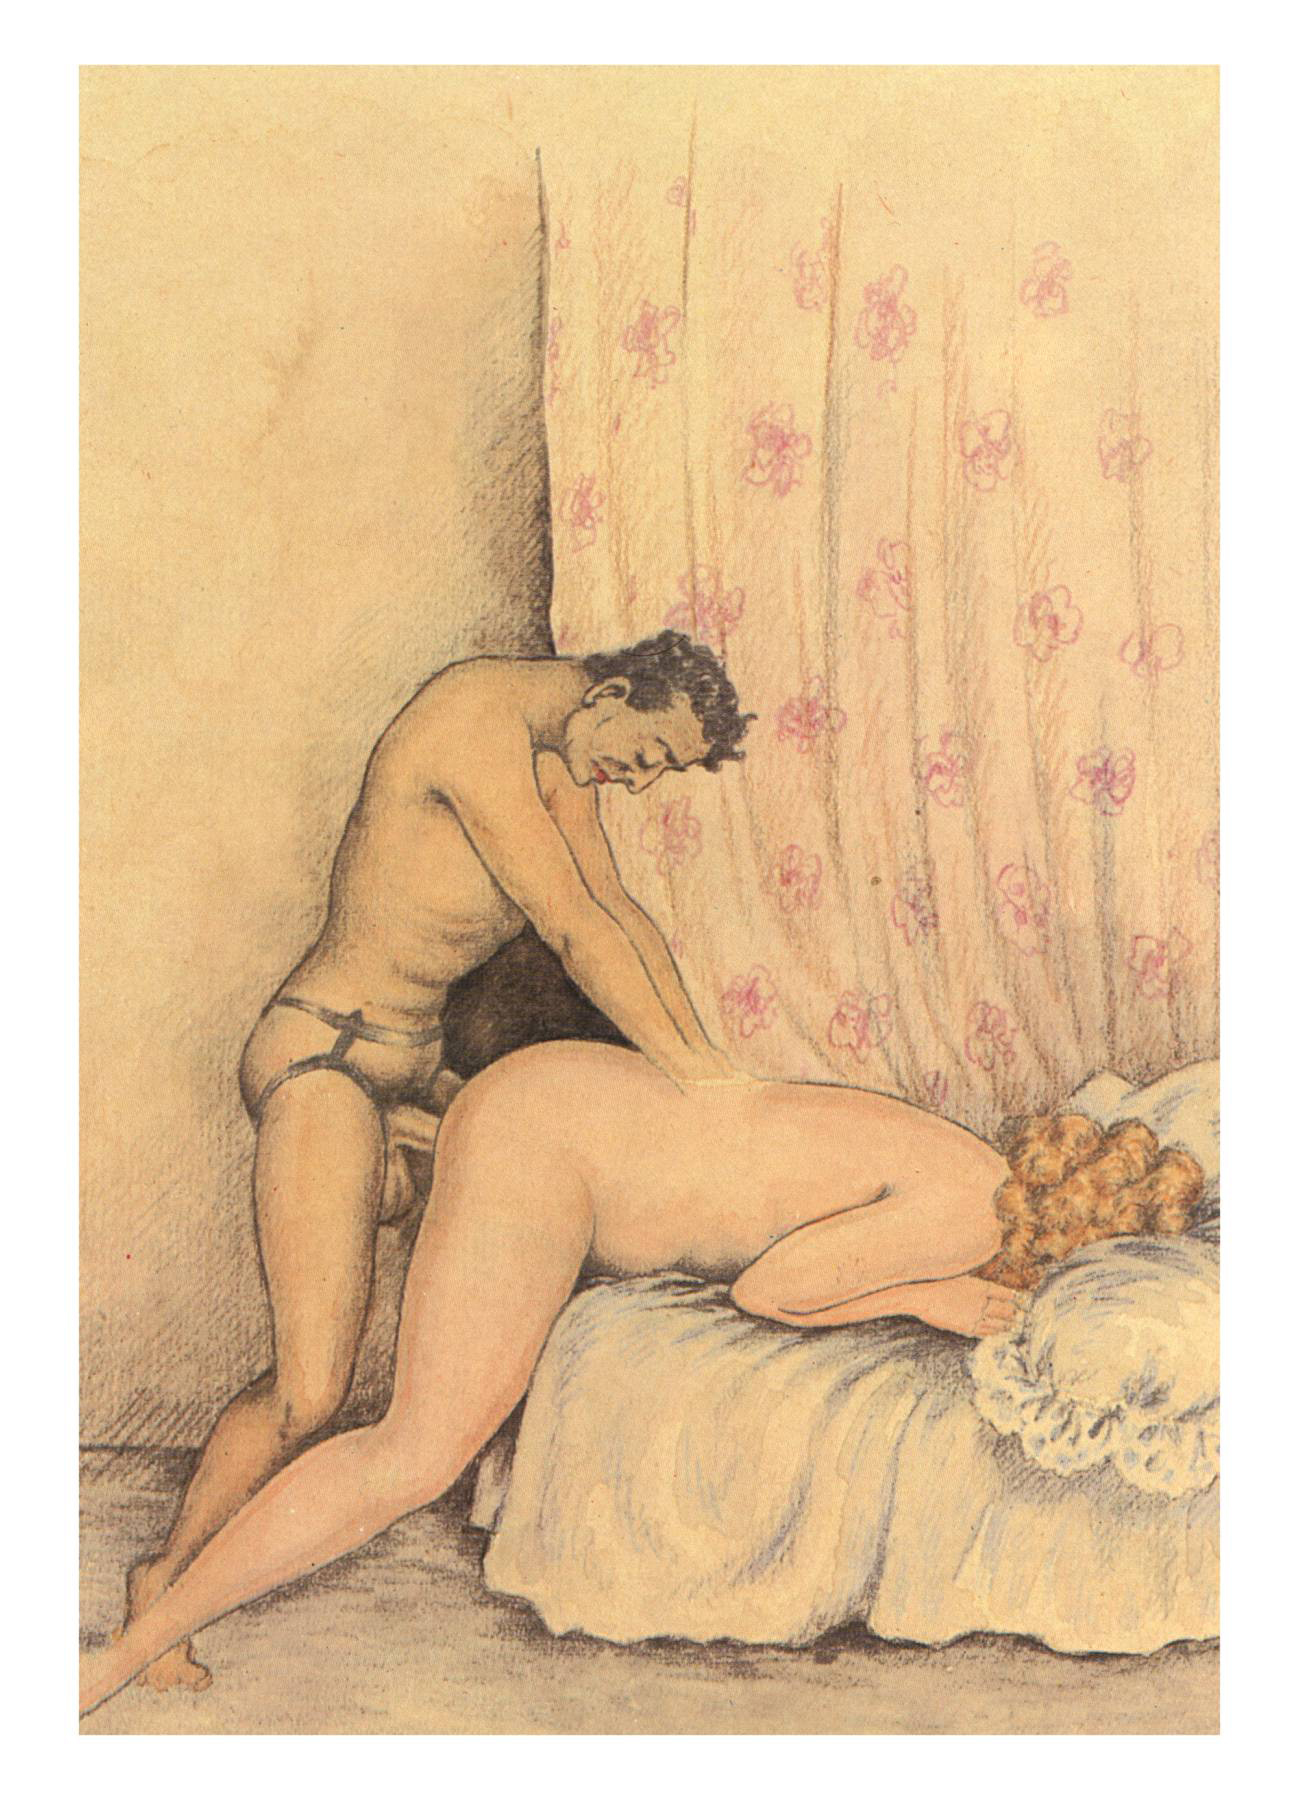 1930s Sex Cartoon - Cartoon Porn Galley image #158983